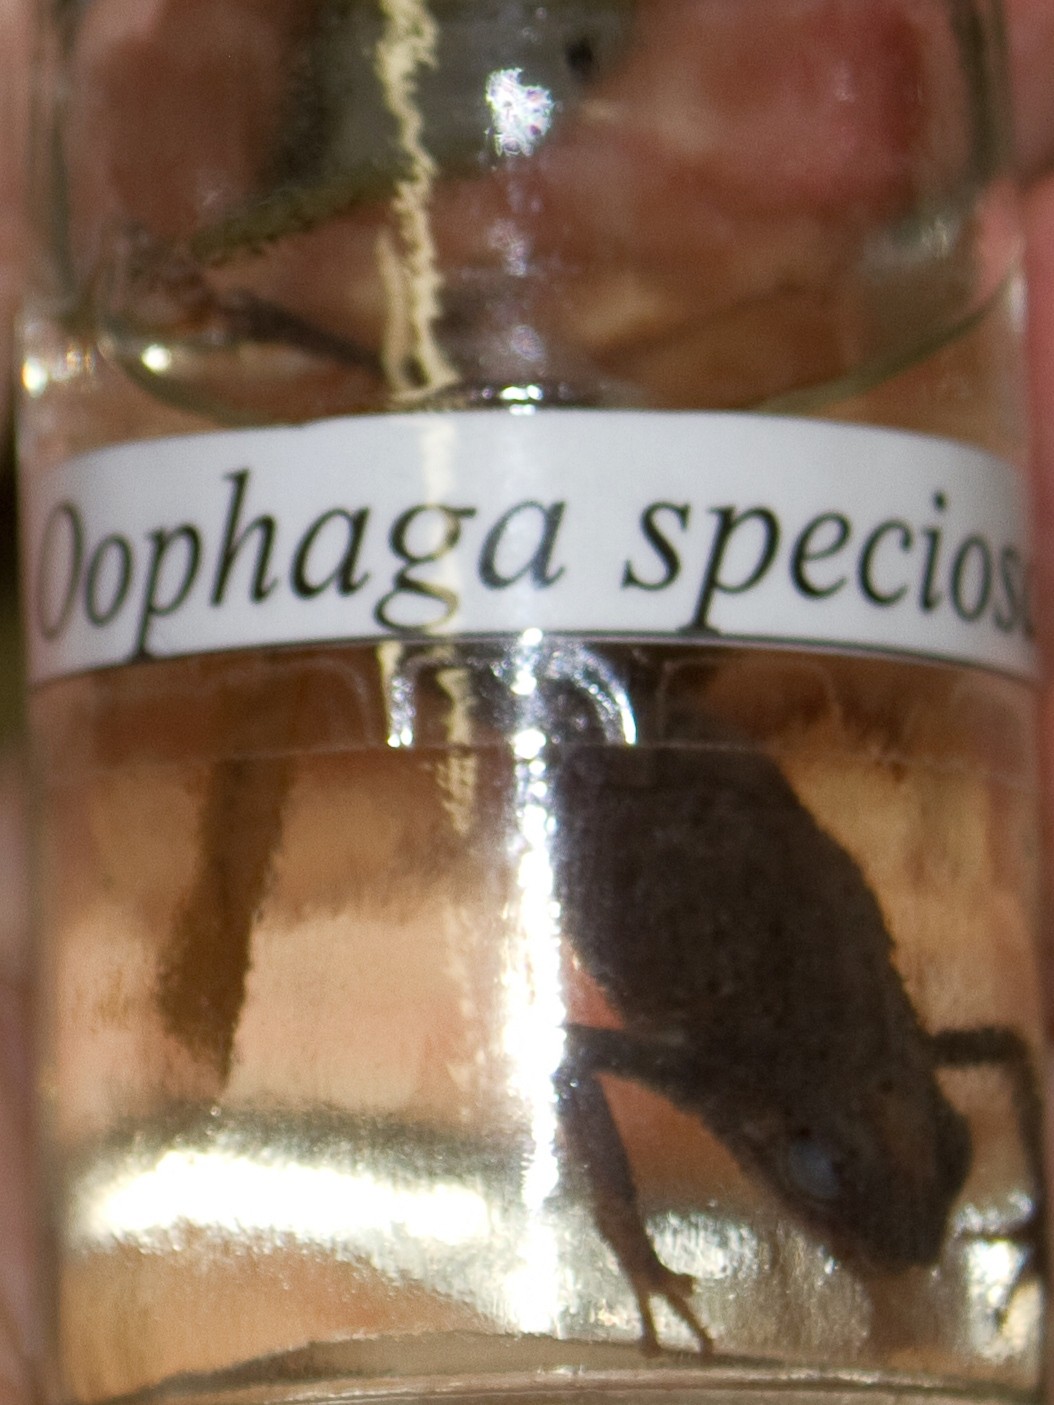 Oophaga (Oophaga)